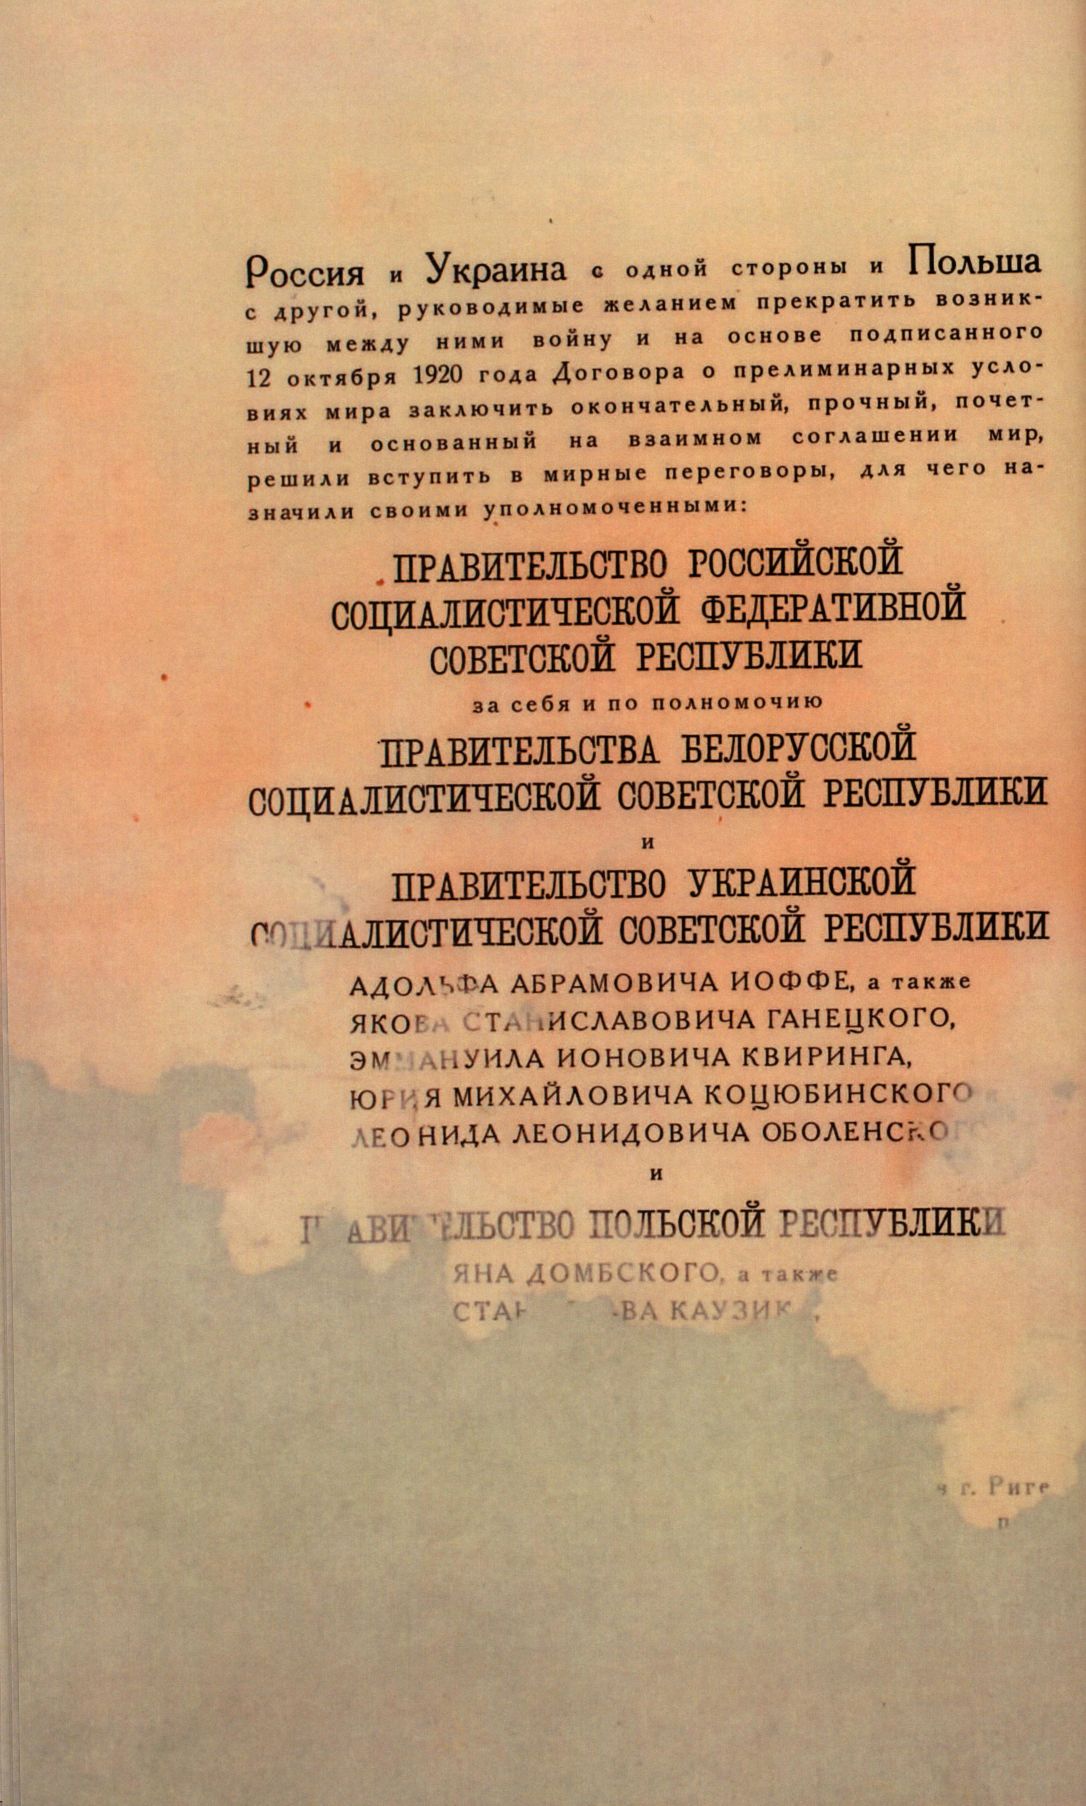 Traktat Pokoju między Polską a Rosją i Ukrainą podpisany w Rydze dnia 18 marca 1921 roku, s. 34, MSZ, sygn. 6739.